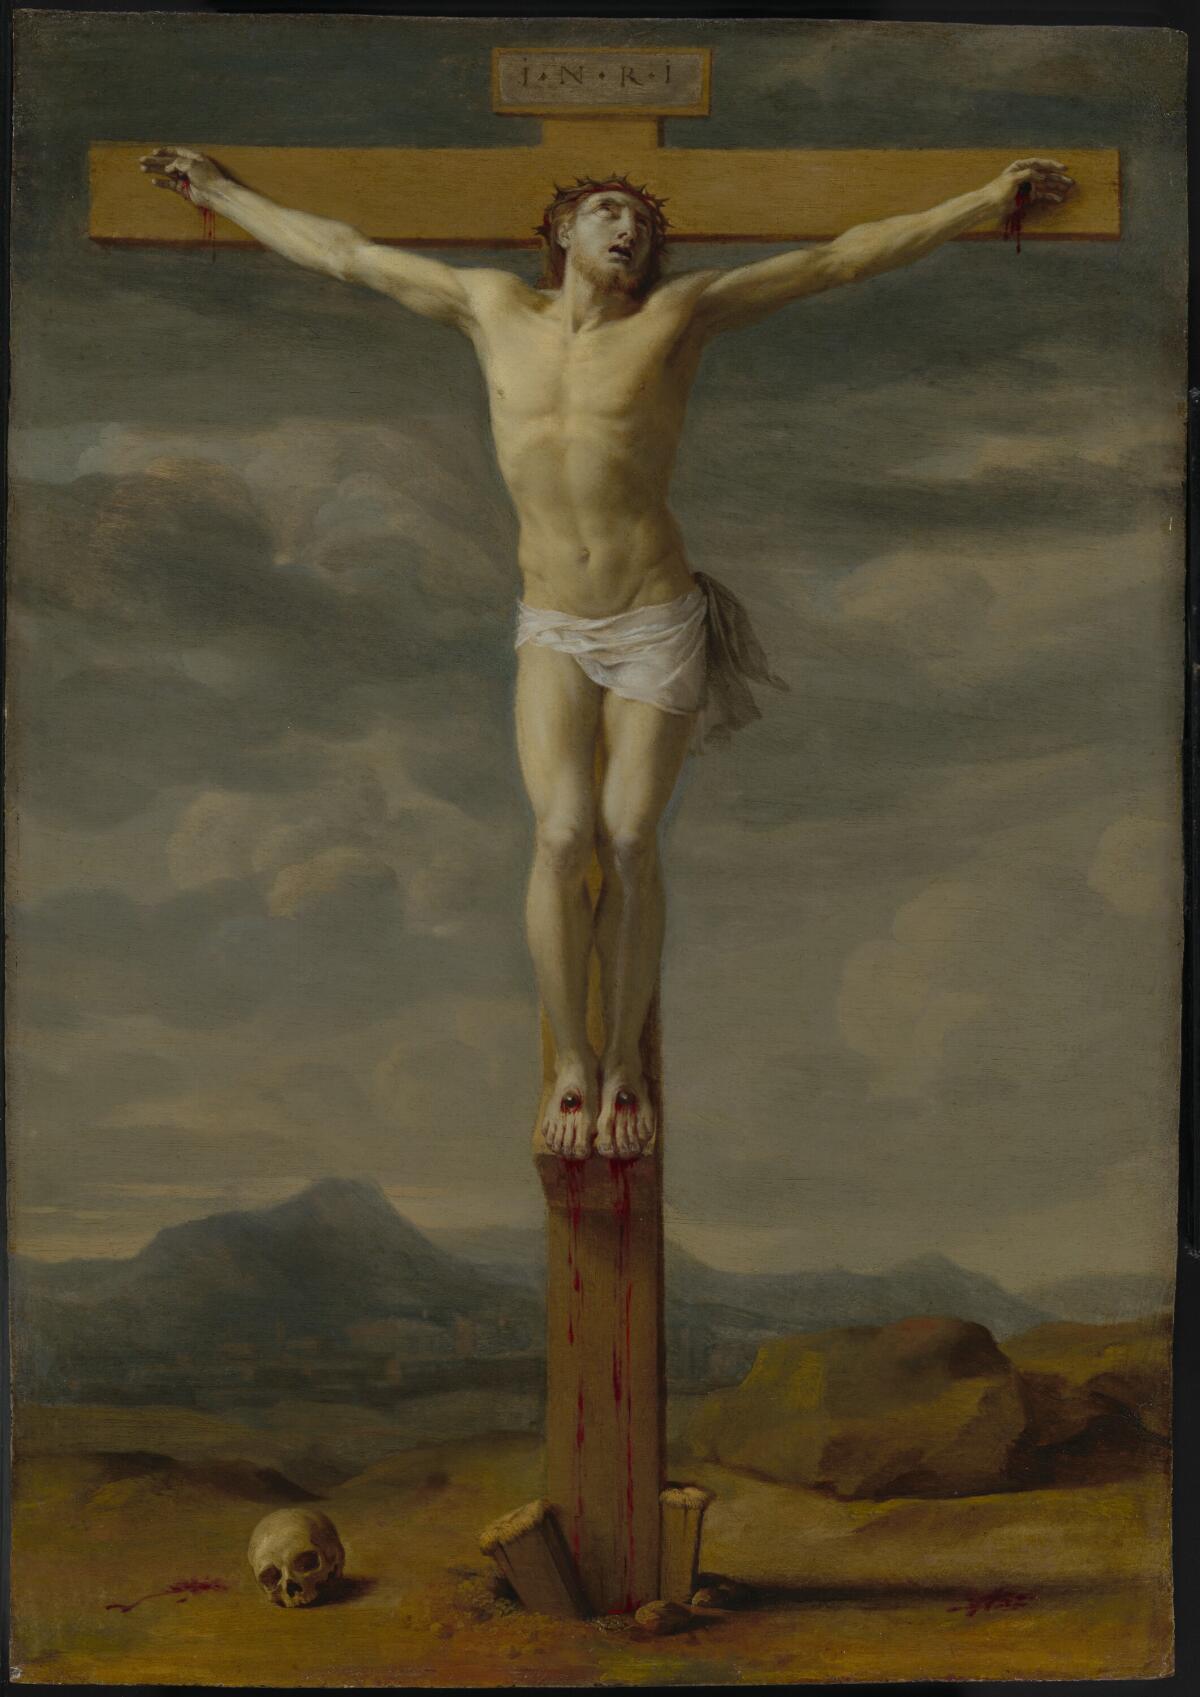 Eustache Le Sueur, “Crucifixion,” 1650-55, oil on copper